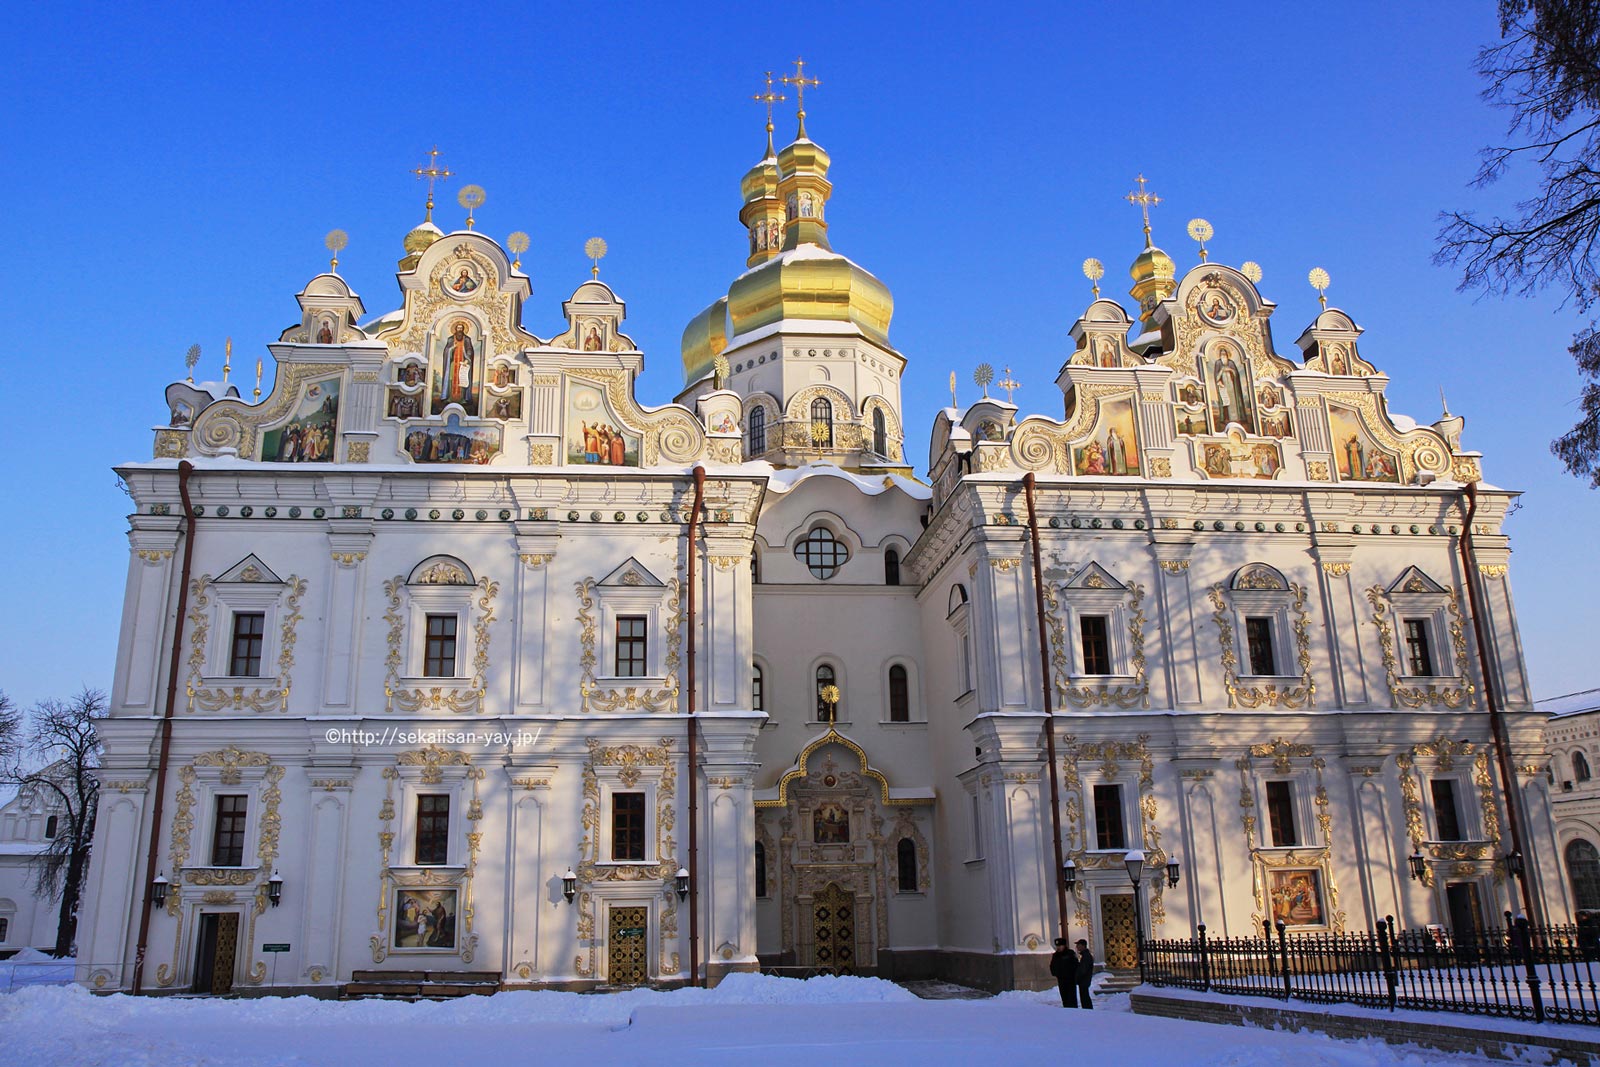 ウクライナ「キエフ：聖ソフィア大聖堂と関連する修道院建築物群、キエフ-ペチェールスカヤ大修道院」